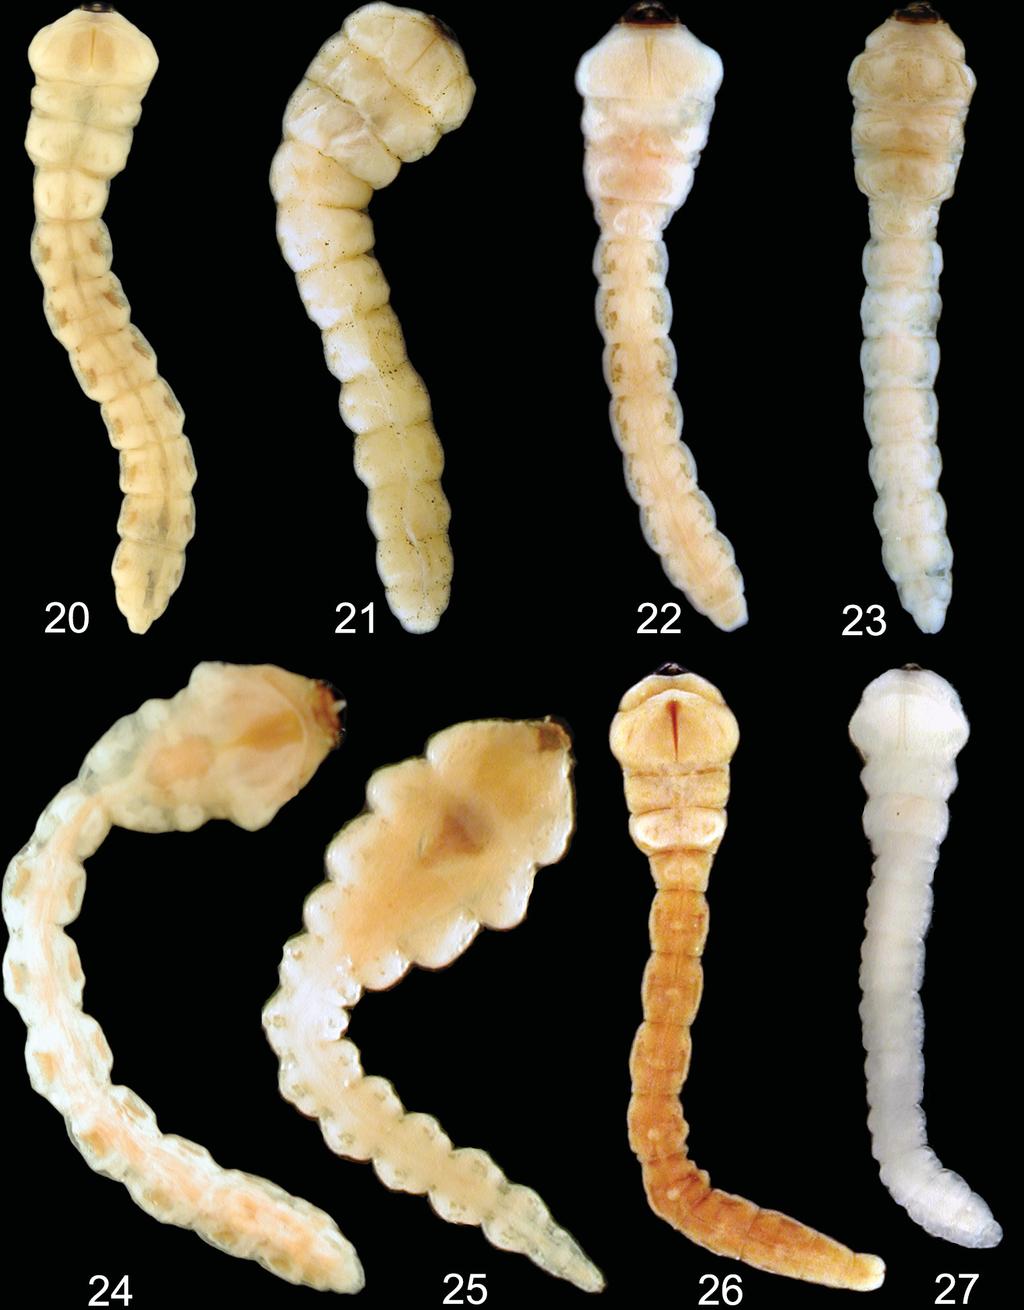 Acta Entomologica Musei Nationalis Pragae, 55(1), 2015 189 Figs 20 27. Astraeini, Xyroscelidini, Prospherini, Polycestini, Haplostethini, and Paratrachyini, larval habitus (dorsal view).